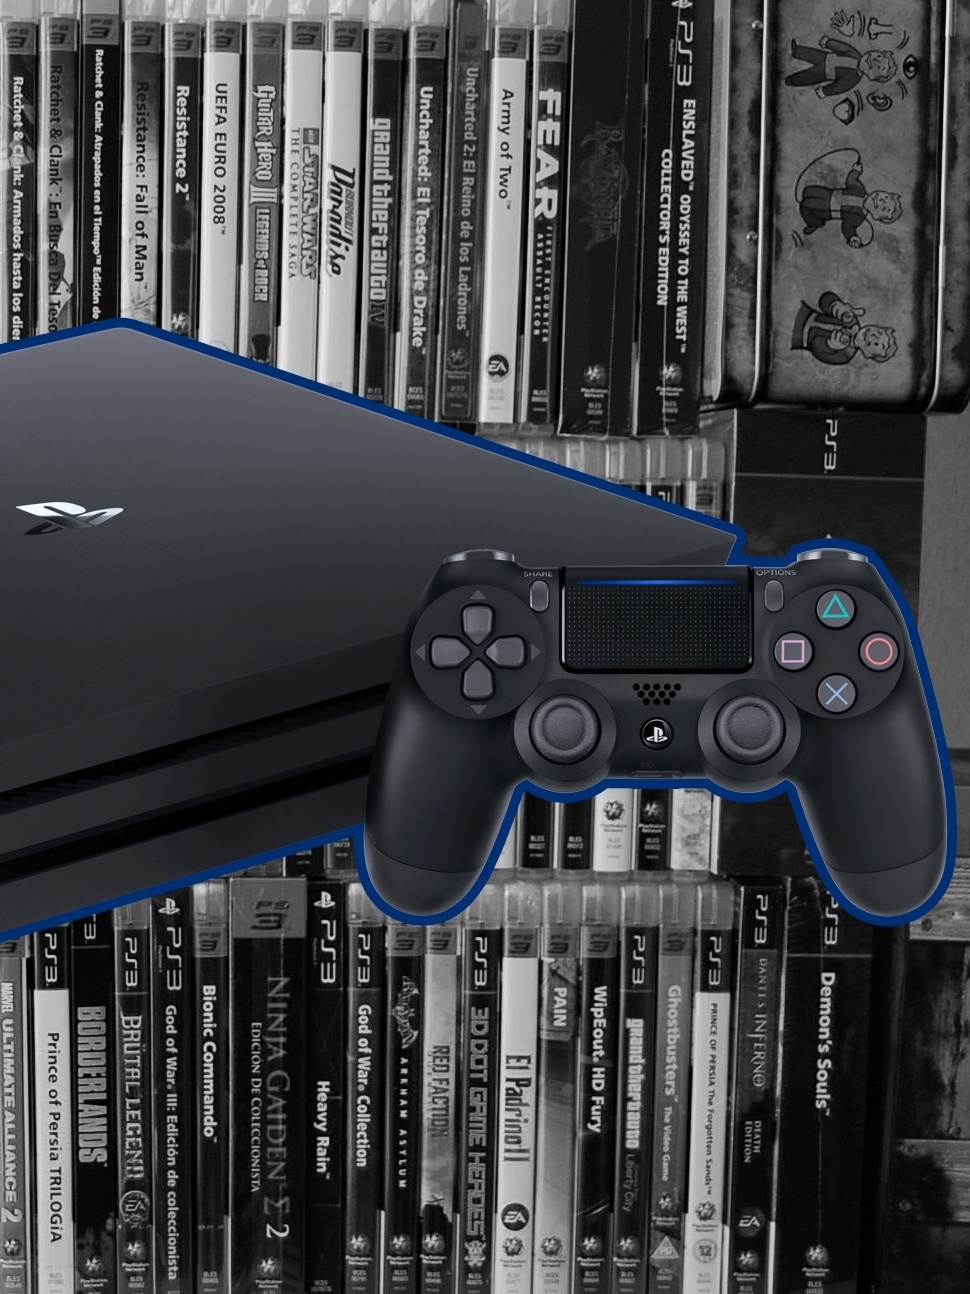 PlayStation 4 não vai rodar jogos de Playstation 3”, diz Sony